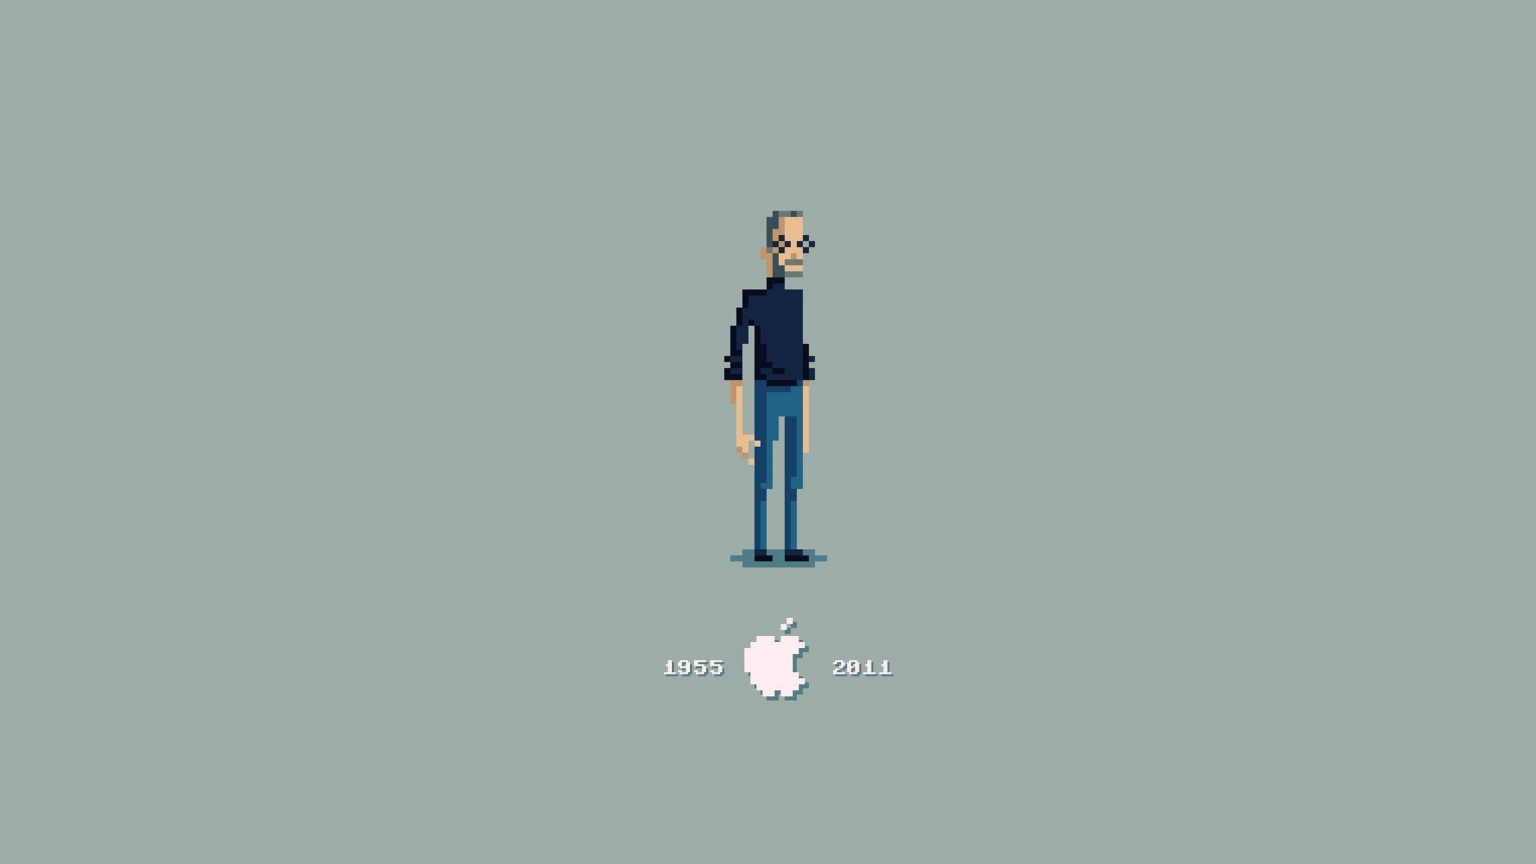 Steve Jobs Pixelated for 1536 x 864 HDTV resolution